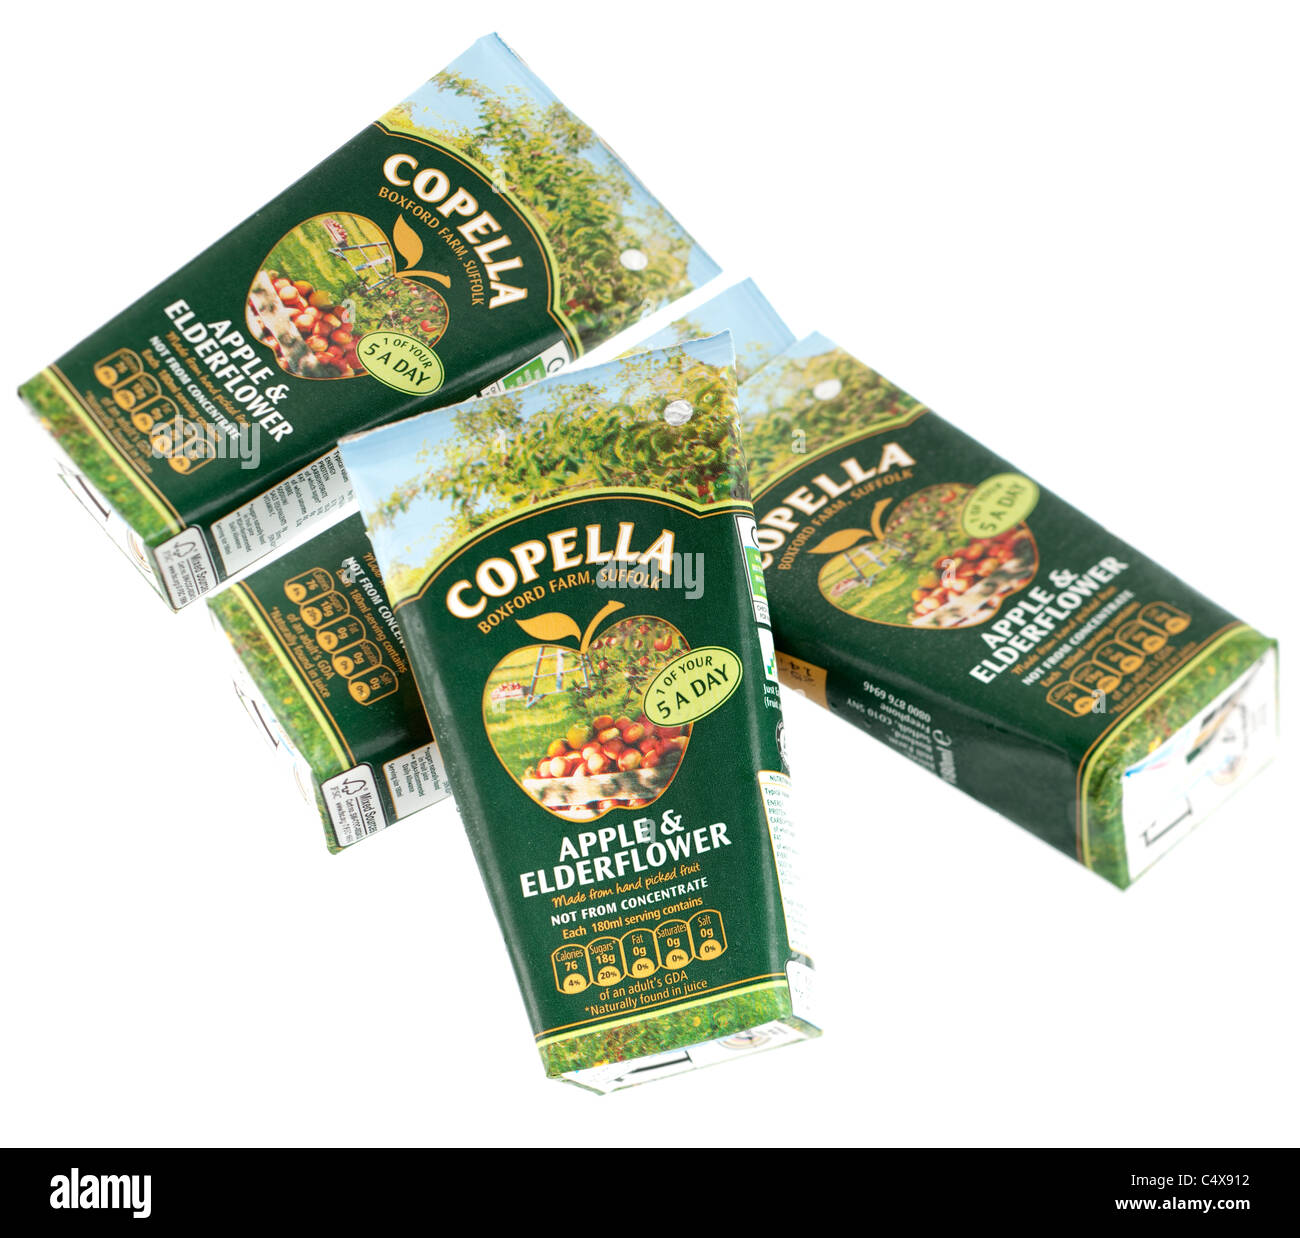 Cuatro pequeños 180ml cartones de Copella manzana y elderflower zumo natural de fruta Foto de stock